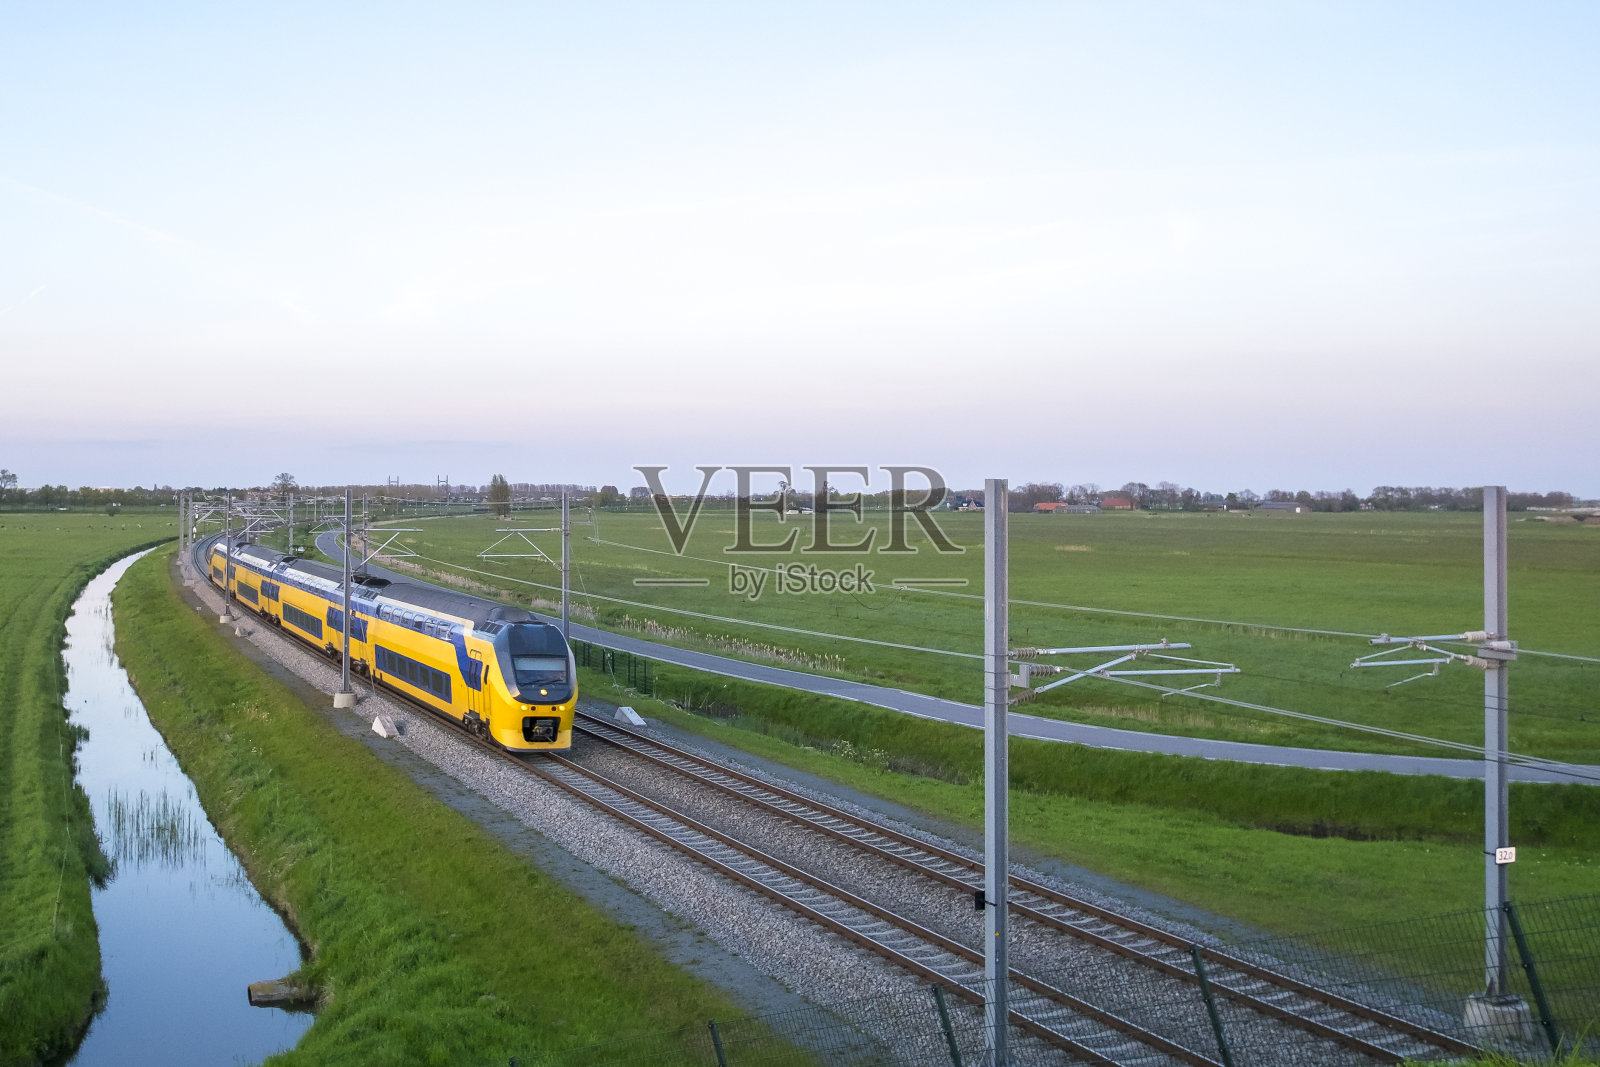 荷兰铁路公司(NS)的一列客运列车行驶在乡村风景中照片摄影图片